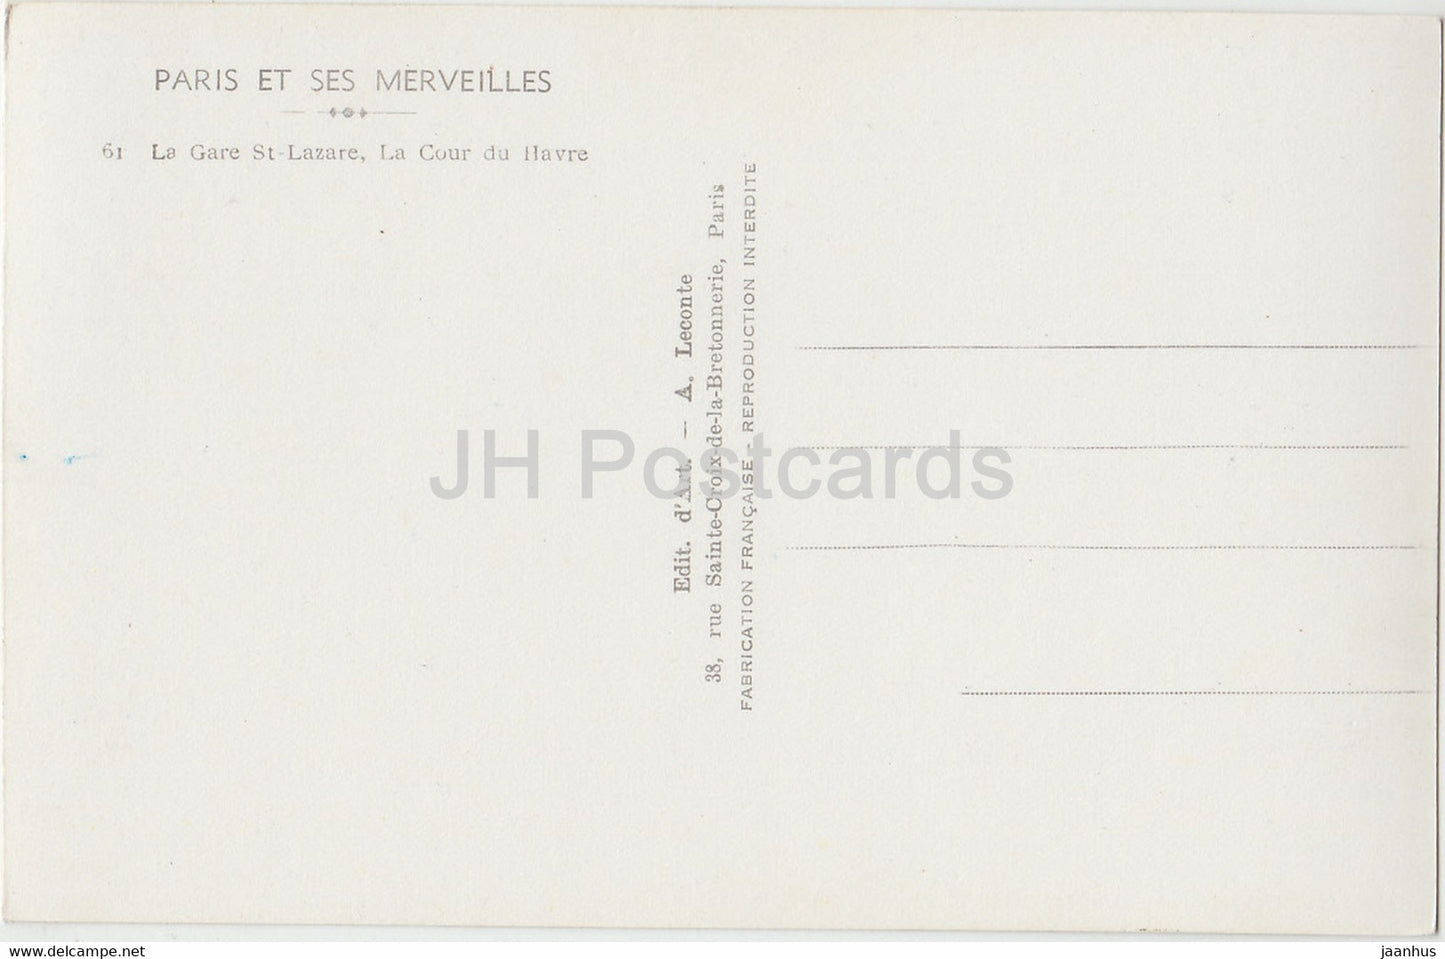 Paris Et Ses Merveilles - La Gare St Lazare - La Cour du Havre - voiture ancienne - 61 - carte postale ancienne - France - inutilisée